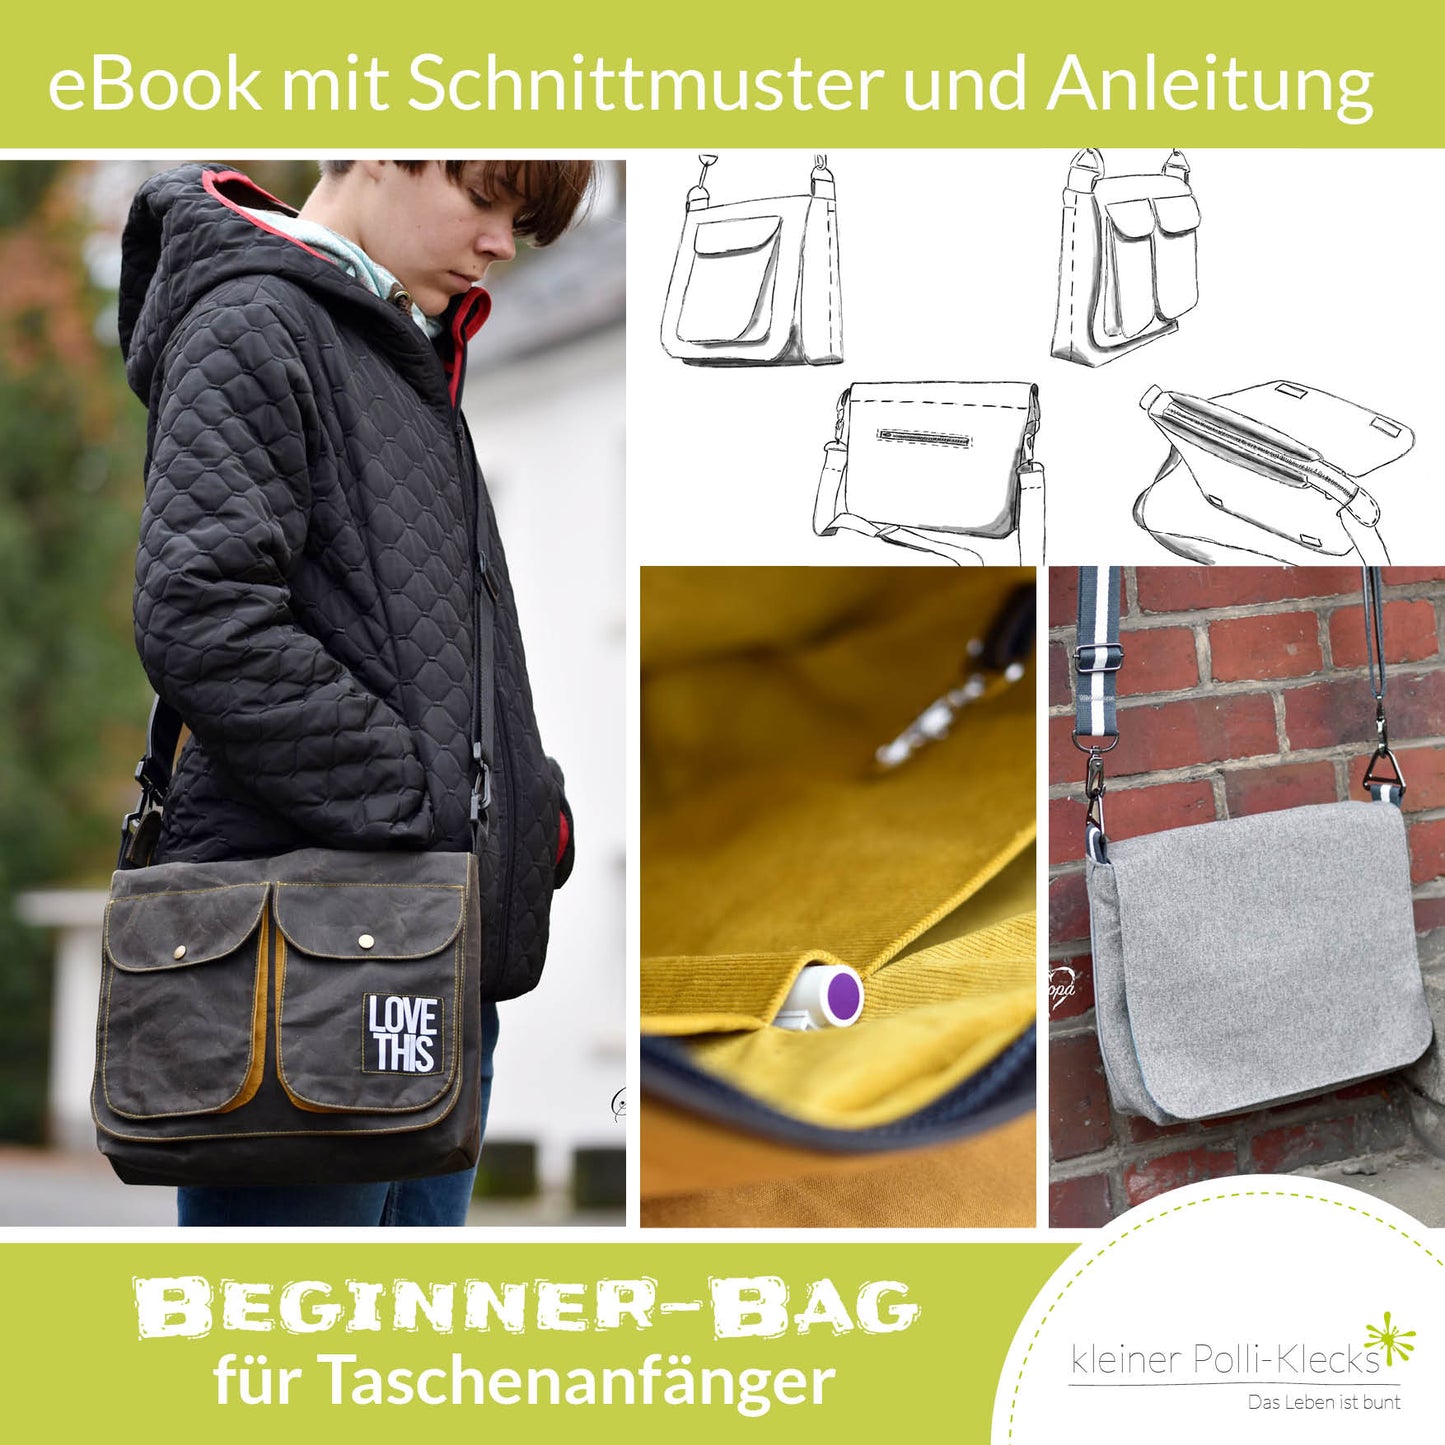 Beginner Bag - Schnitt + Anleitung